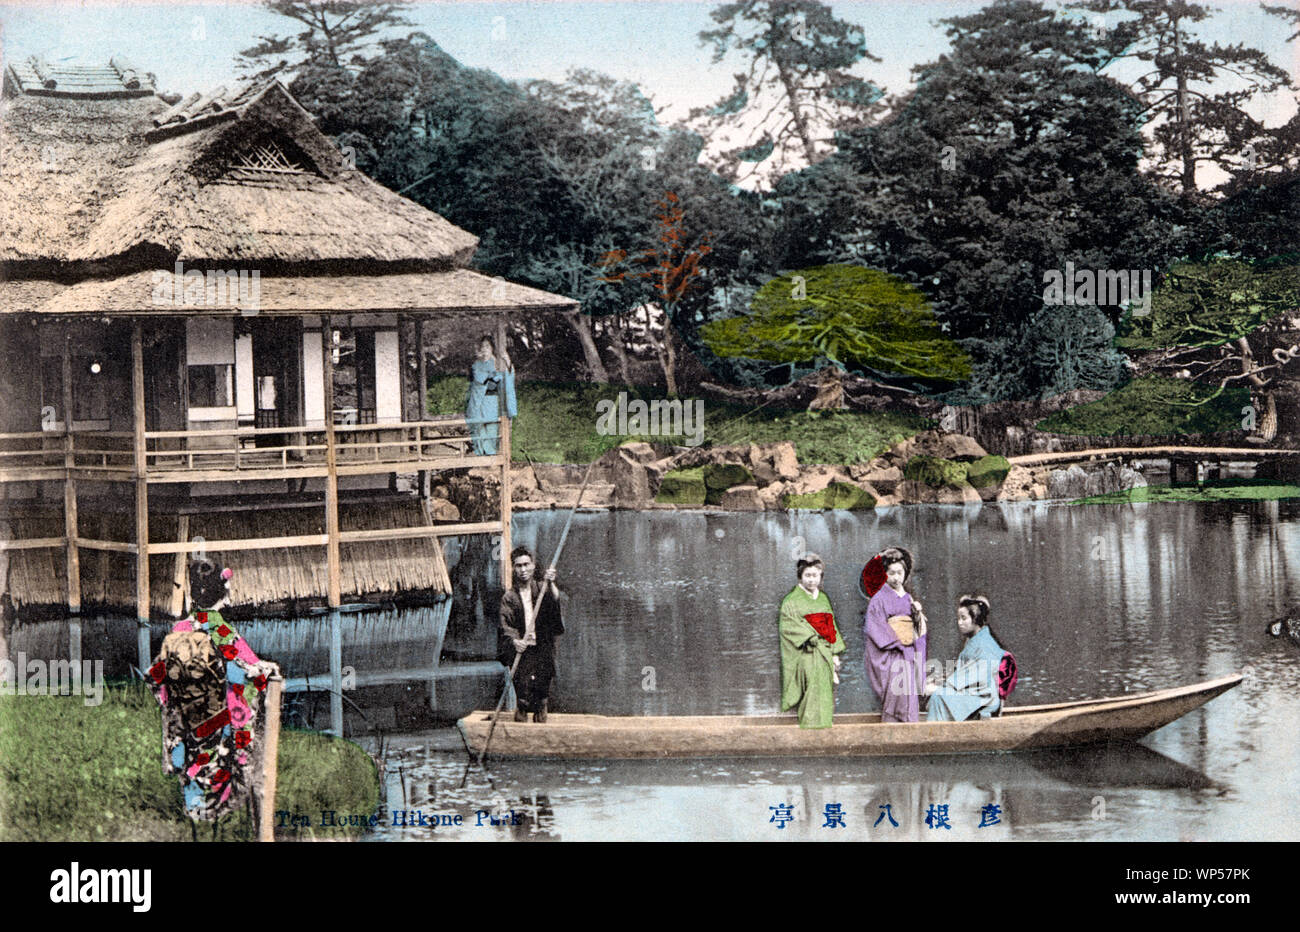 [ 1910s Giappone - tradizionale Giardino Giapponese ] - tre giovani donne e un barcaiolo stand in una piccola barca mentre altre due donne guarda al Padiglione Hakkeitei nel giardino Genkyuen in Hikone, nella prefettura di Shiga. Xx secolo cartolina vintage. Foto Stock